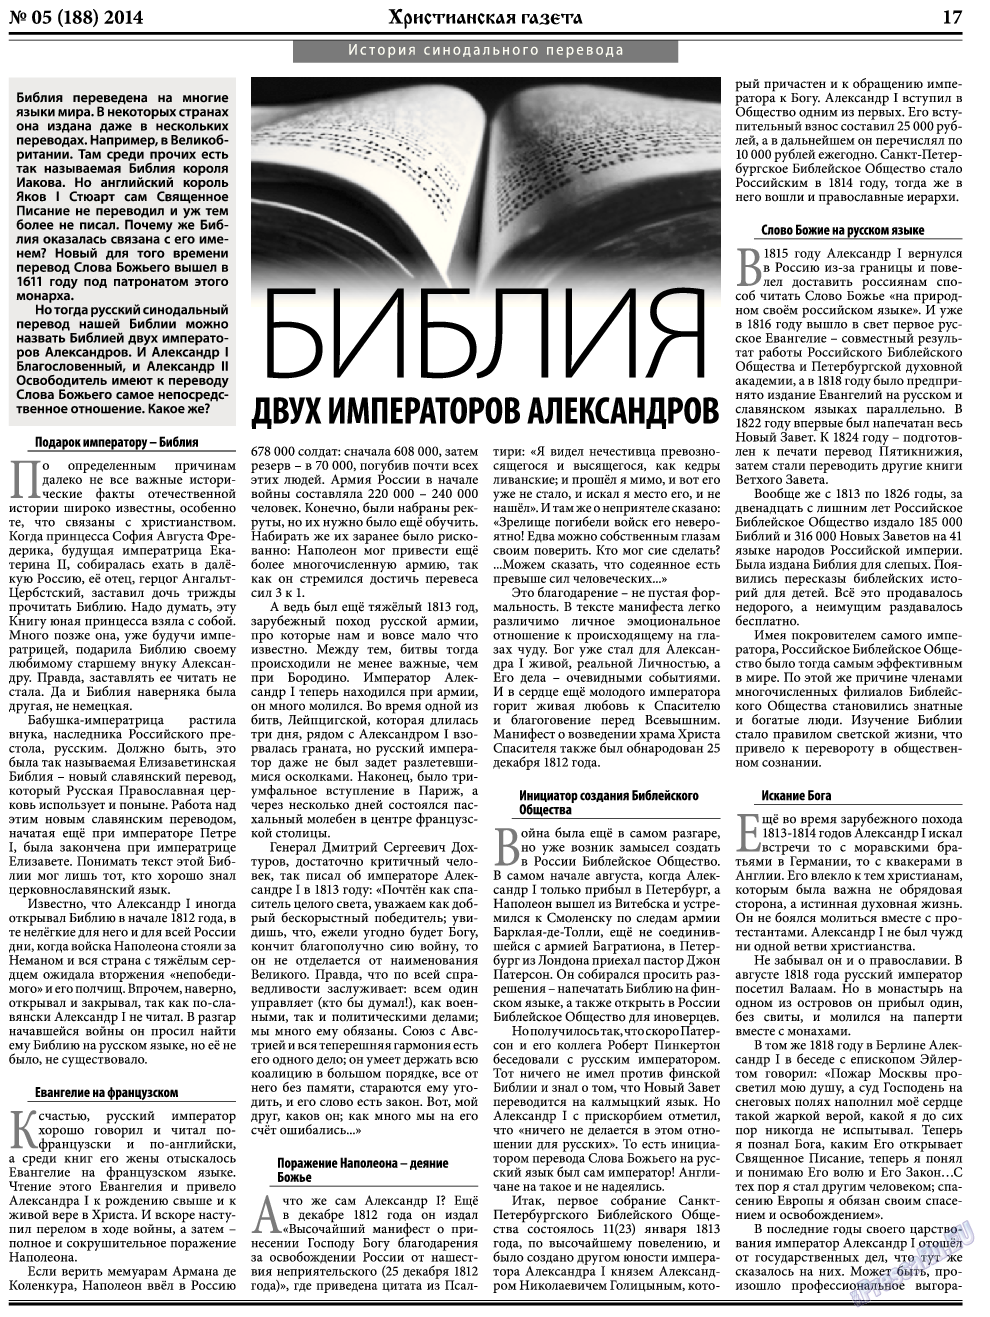 Христианская газета, газета. 2014 №5 стр.25